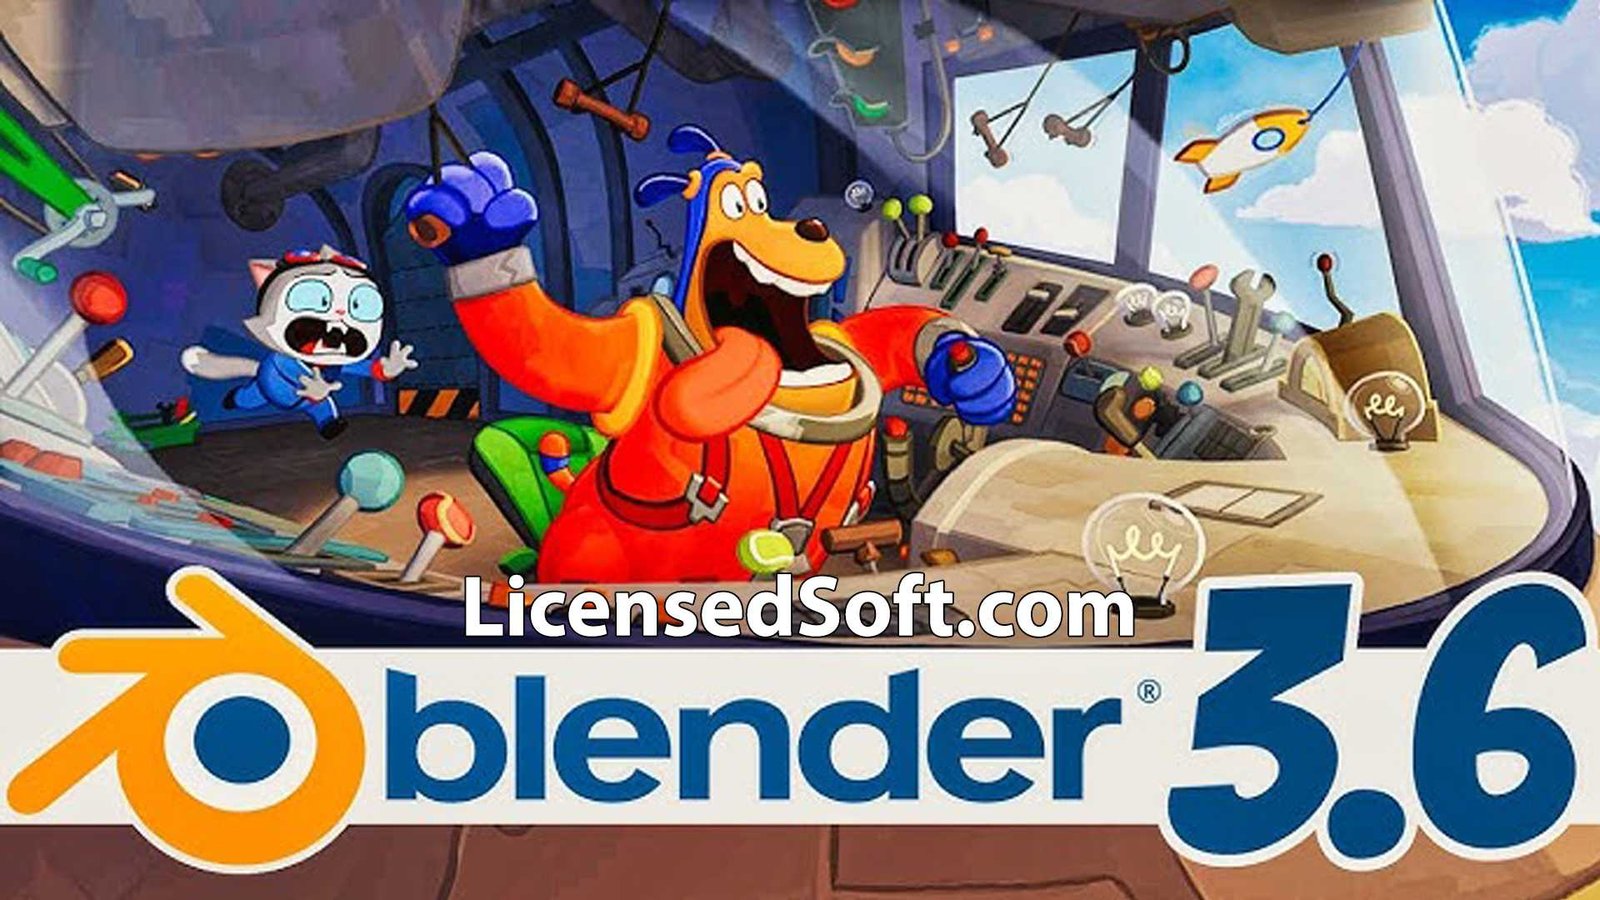 Blender 3.6.1 2023 Cover Image By LicensedSoft